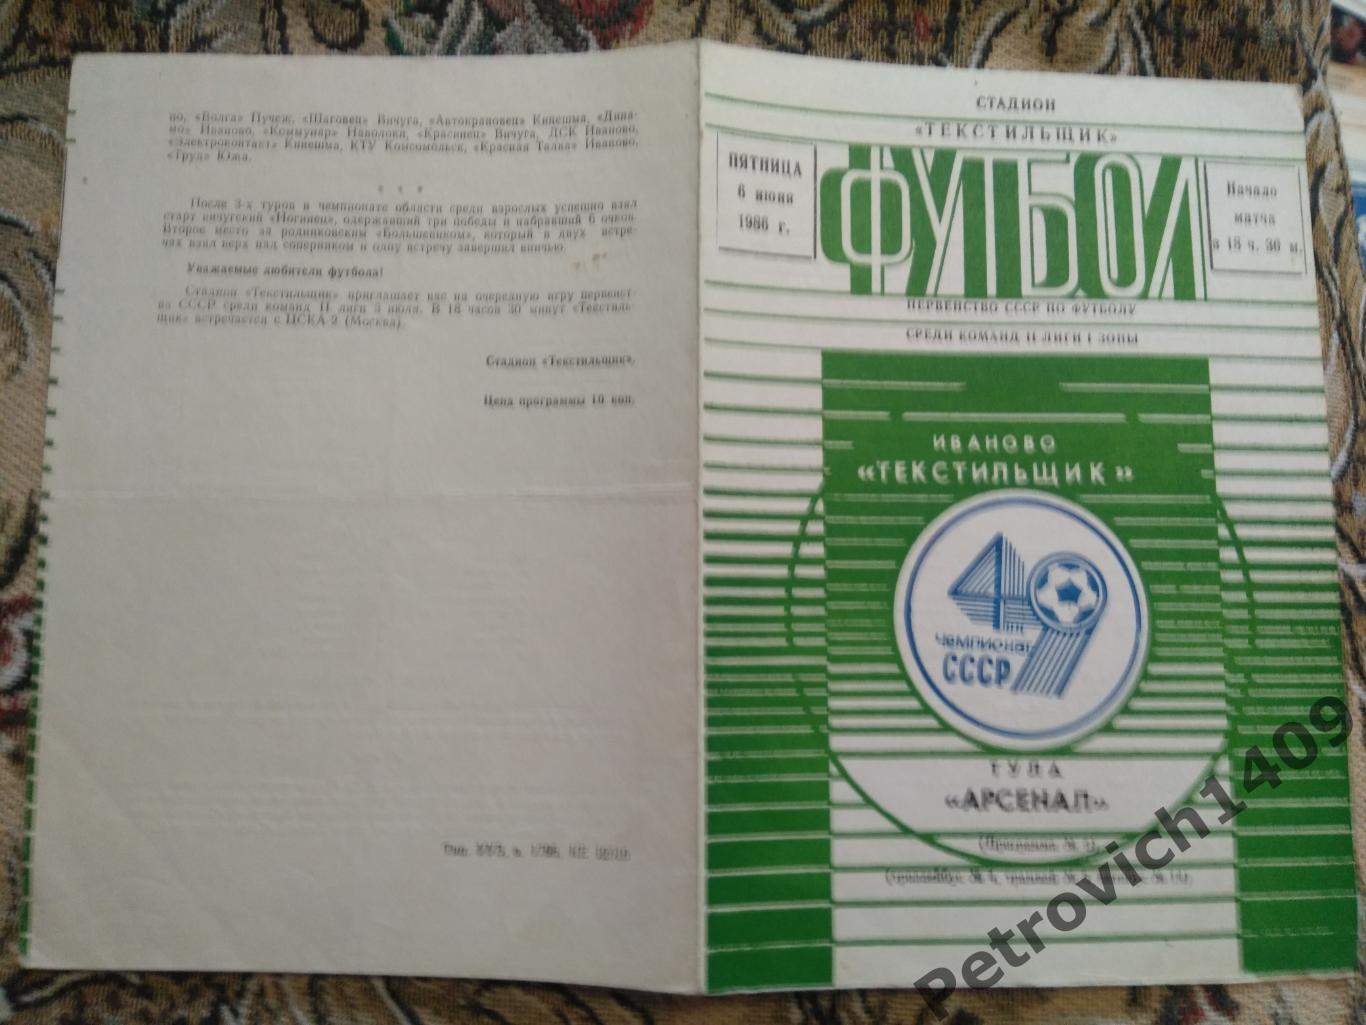 Текстильщик Иваново - Арсенал Тула 6 июня 1986 год